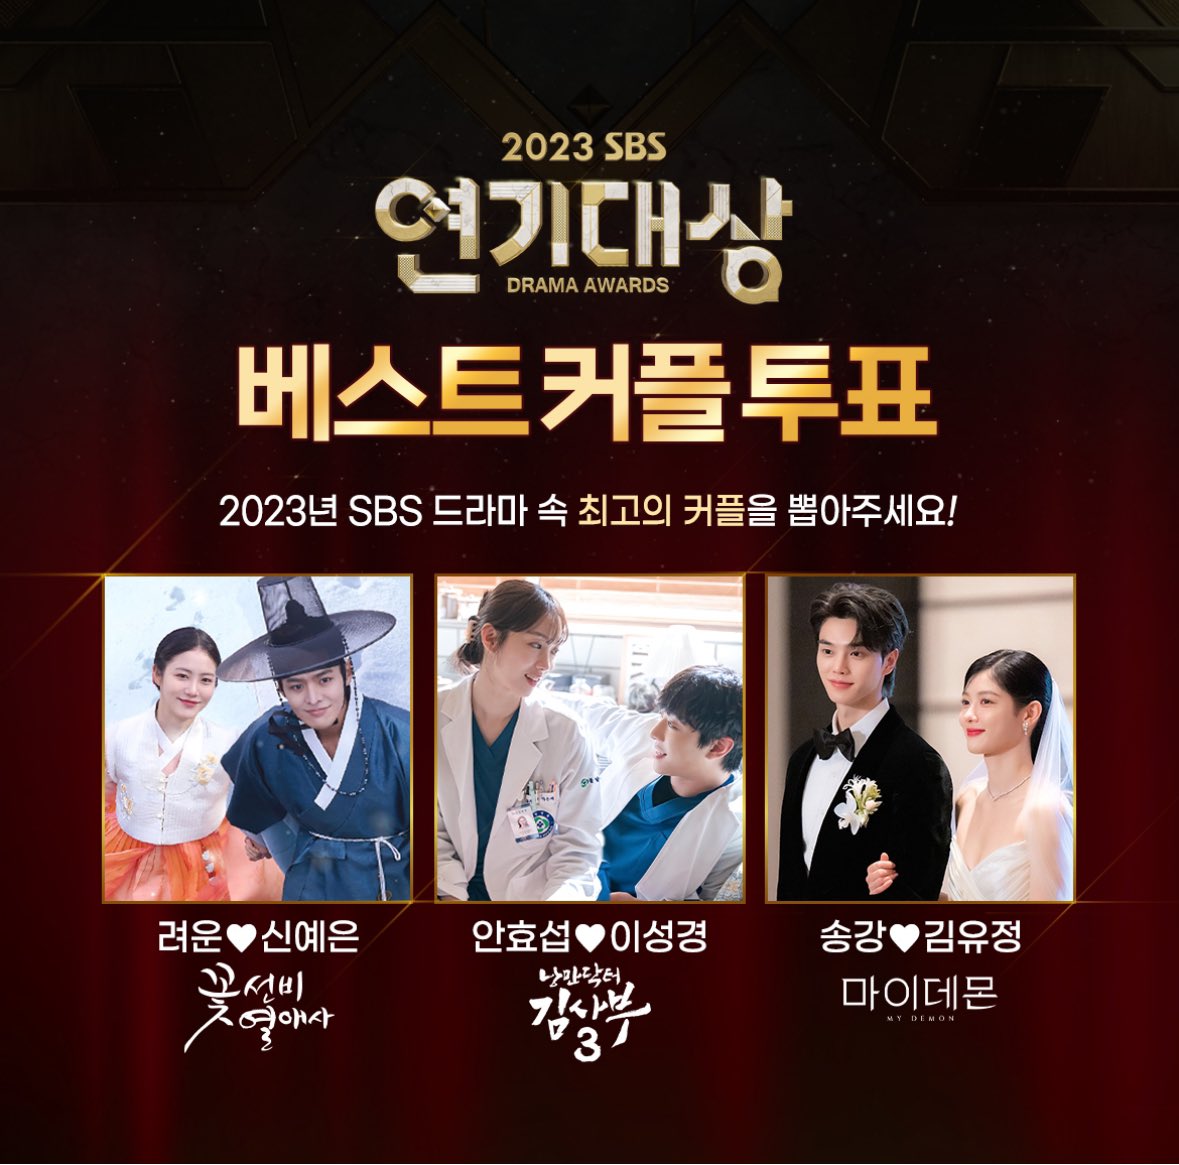 sbs drama awards song kang